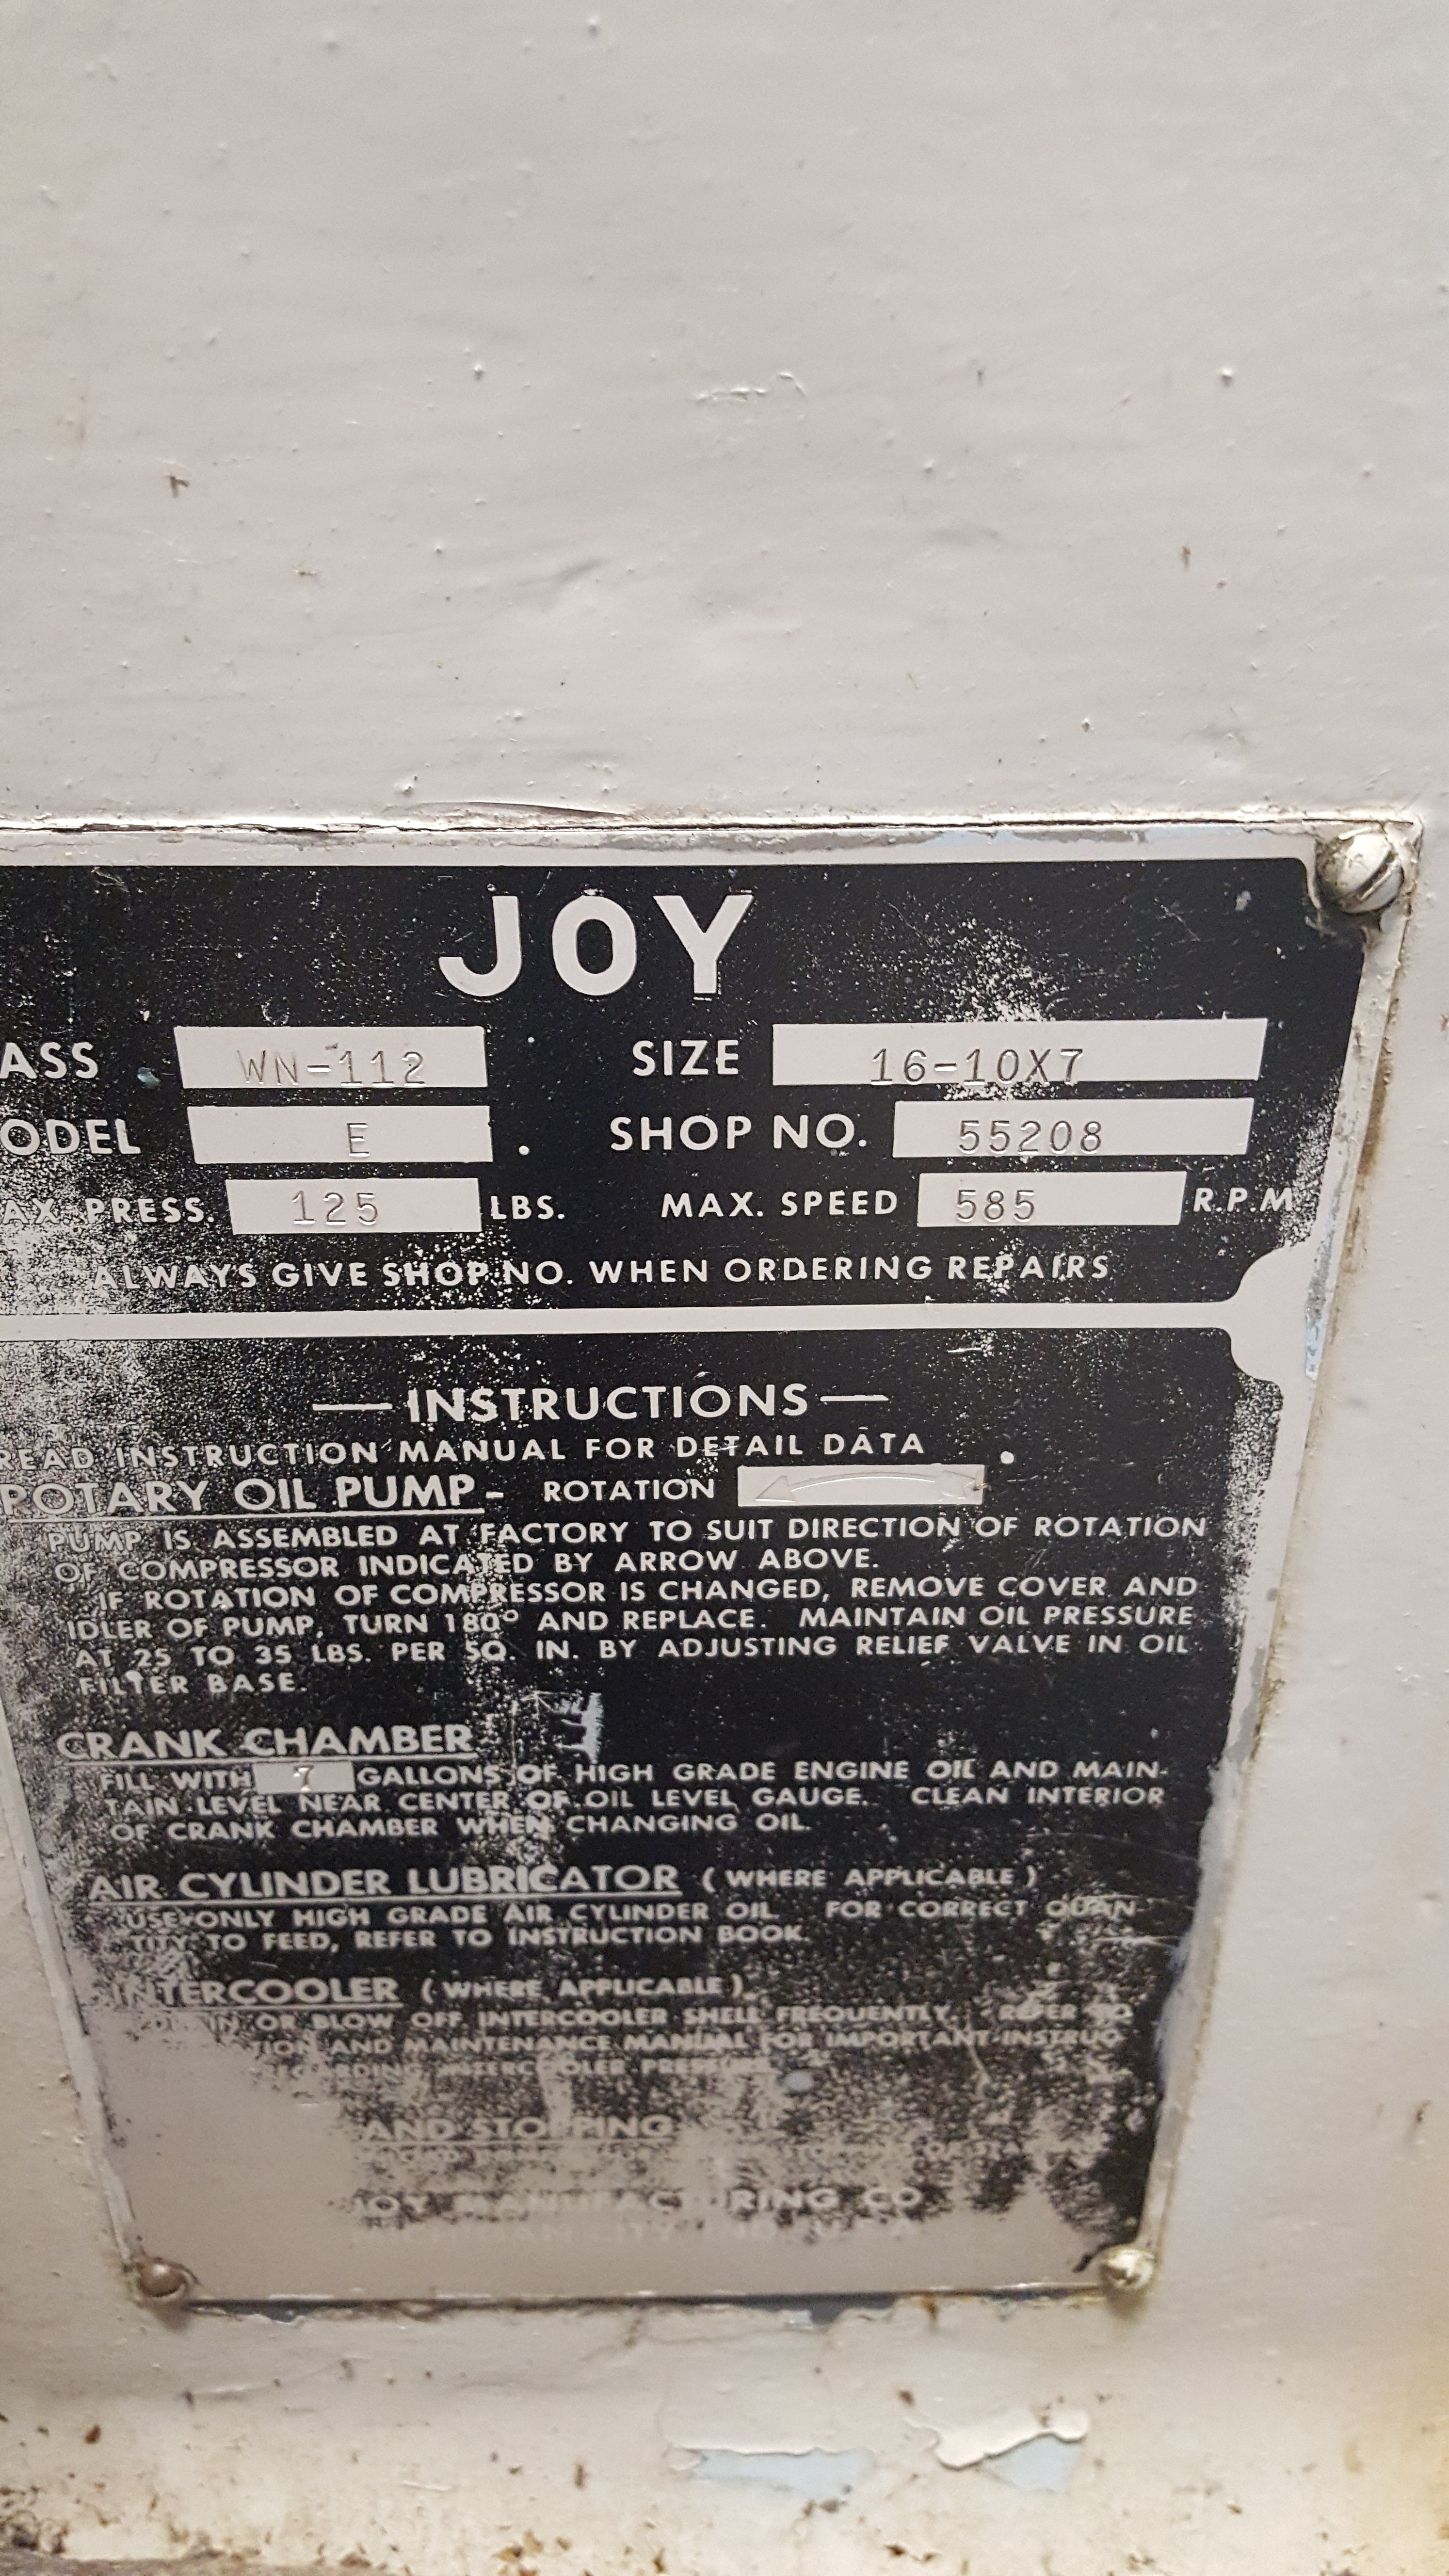 Joy Compressor Package (3) For Sale